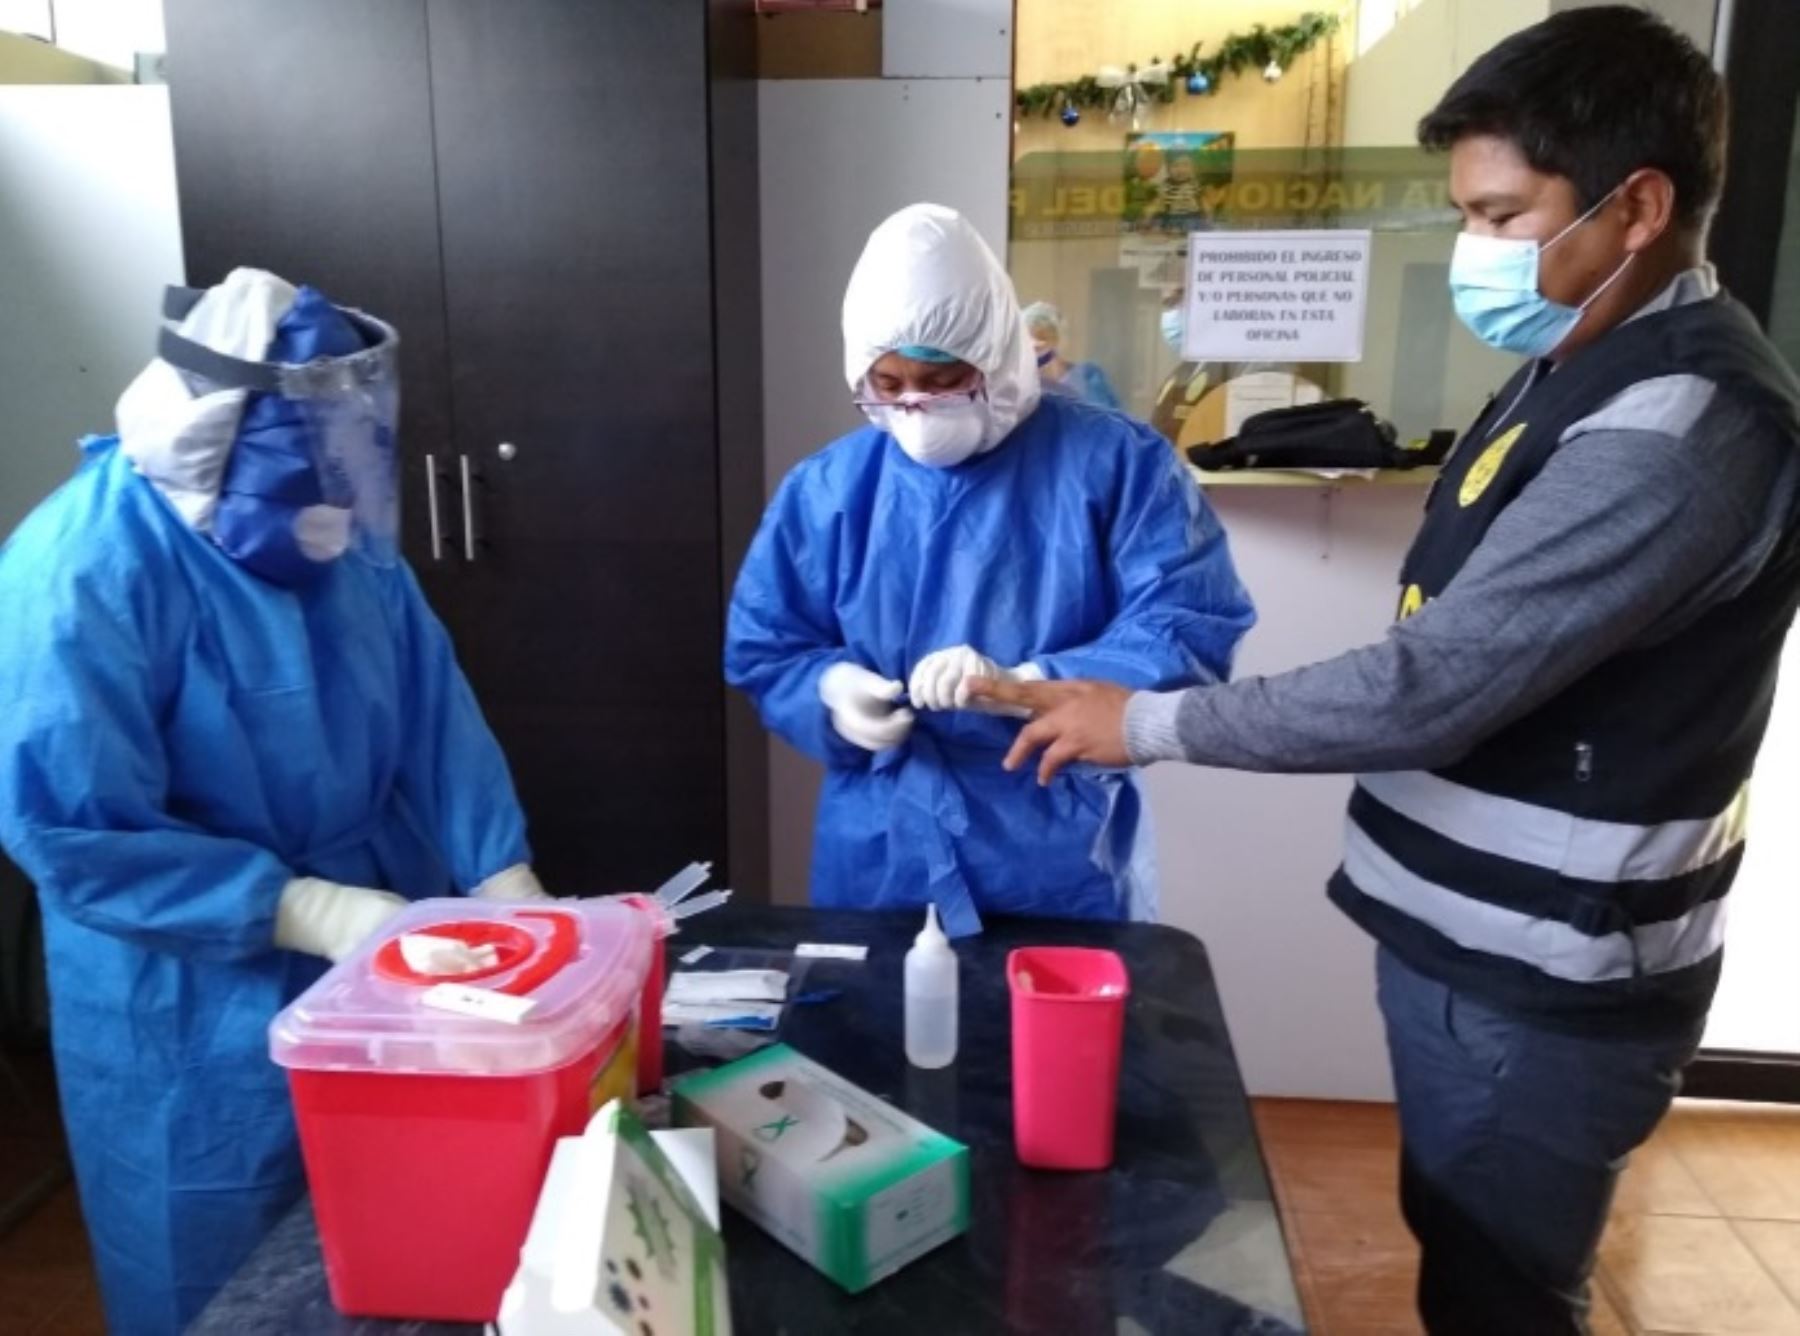 Un total de 40 agentes de la Dirección de Seguridad del Estado de la Policía Nacional del Perú (PNP) se vienen sometiendo a pruebas rápidas para detección del coronavirus covid-19 en la ciudad de Huancayo, región Junín.